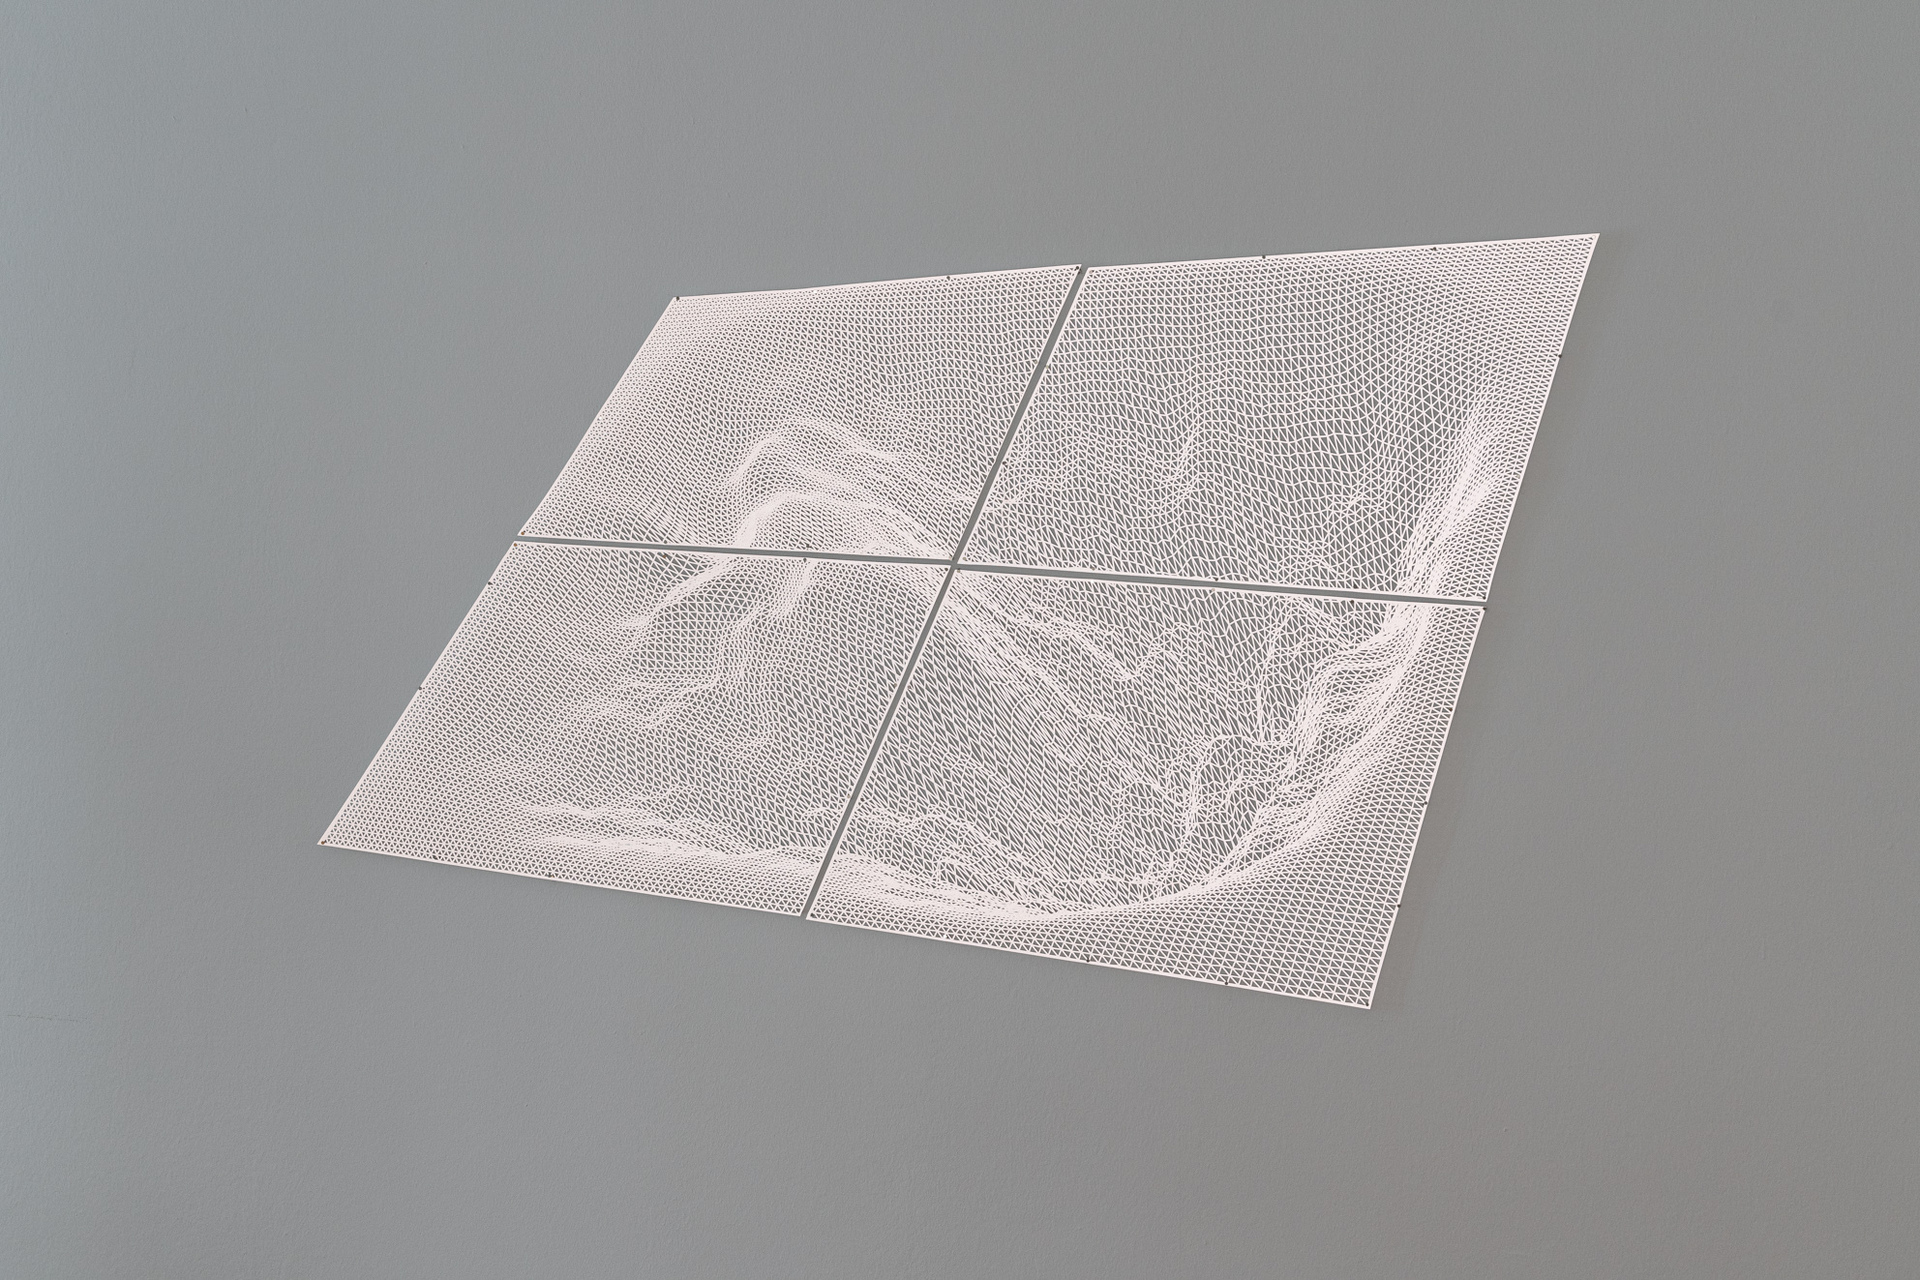 Lena von Goedeke, "Radar I", 2018, cut in reflective fabric, 105 x 125 cm